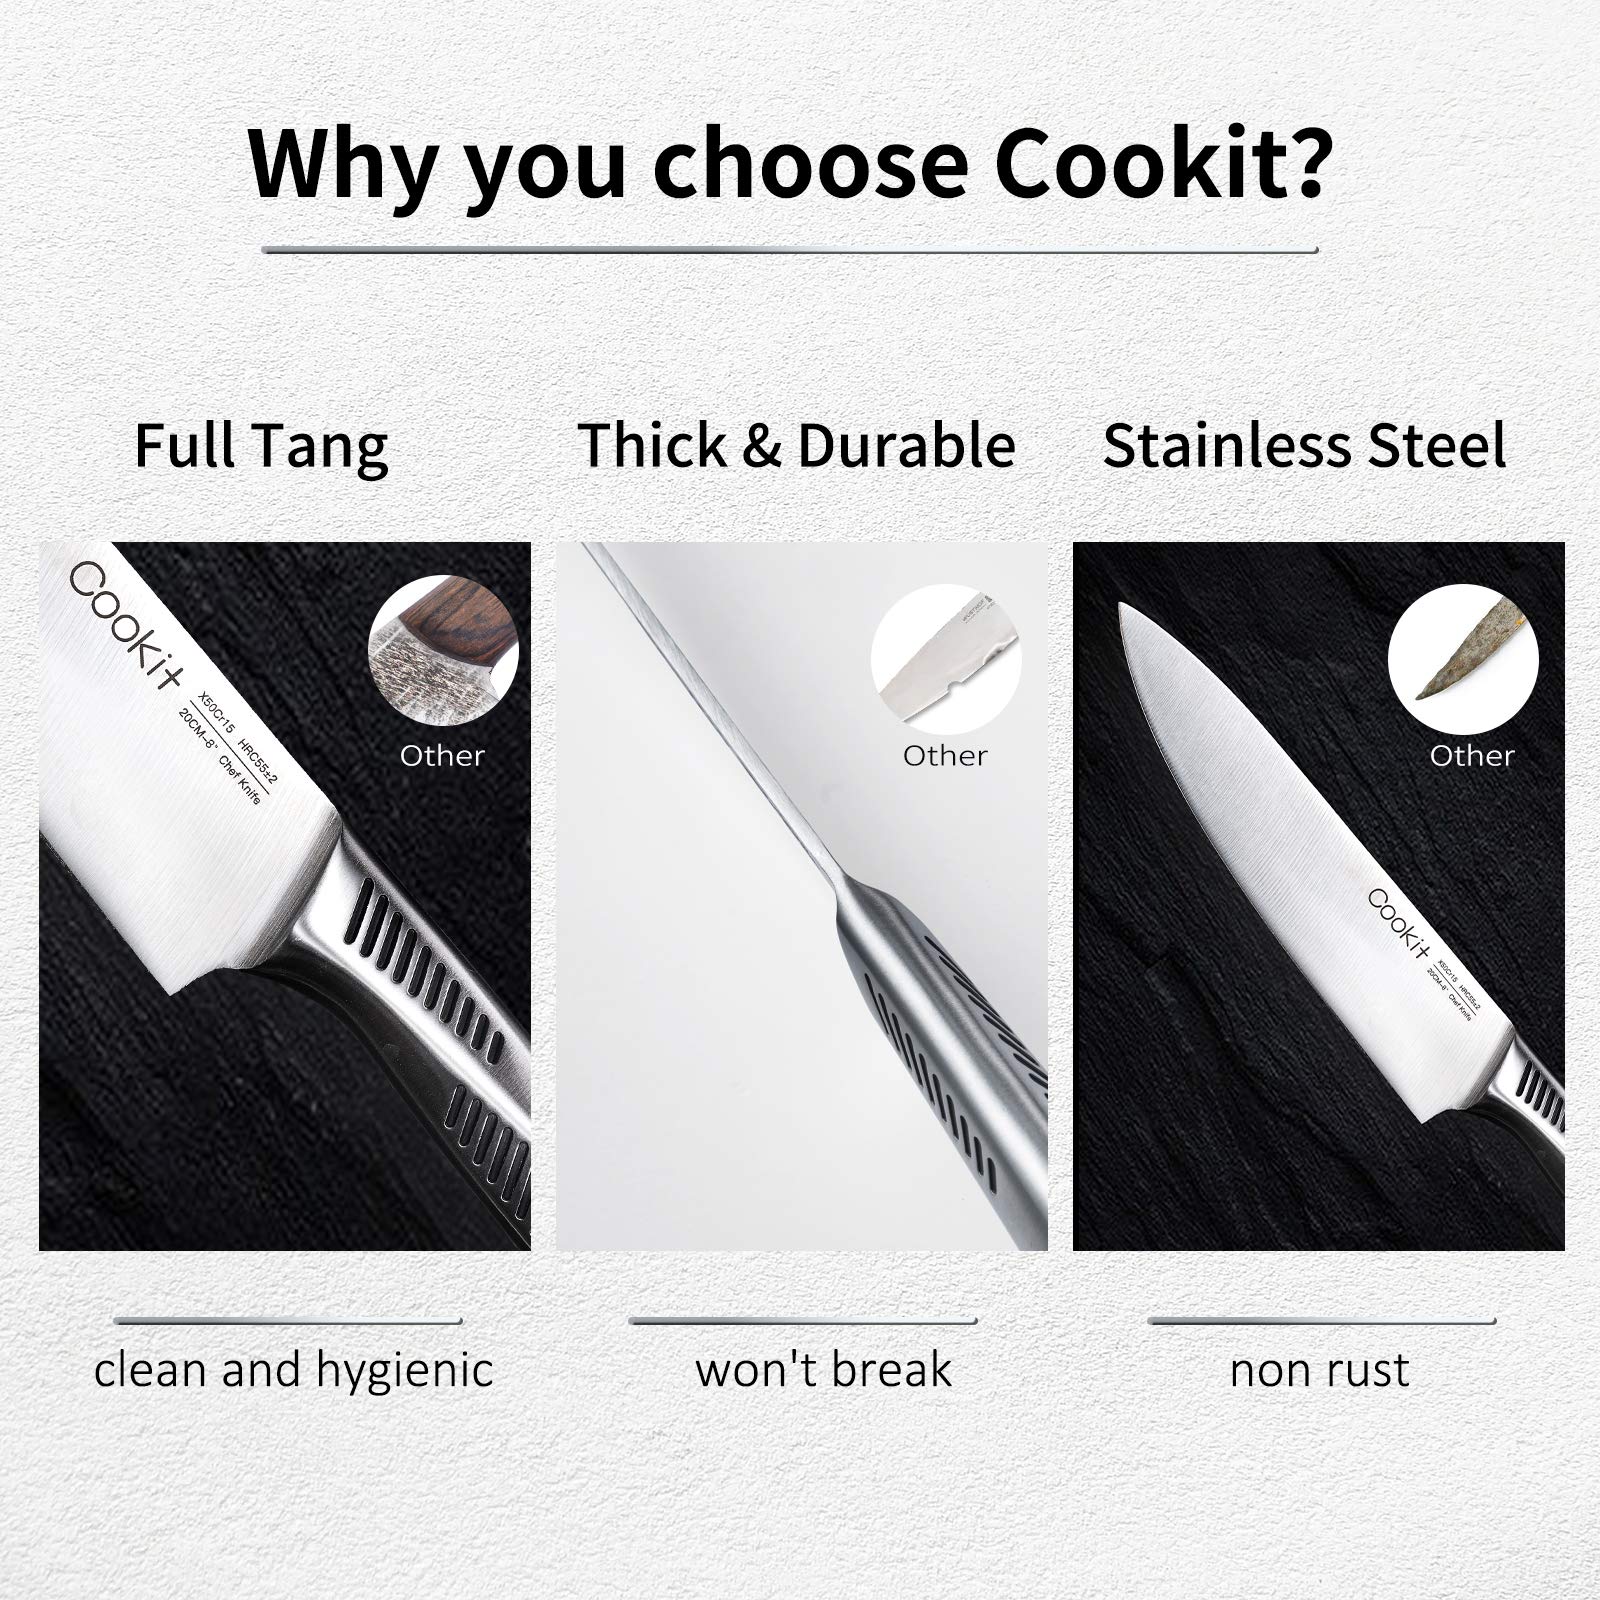 cookit kitchen knife set german stainless steel